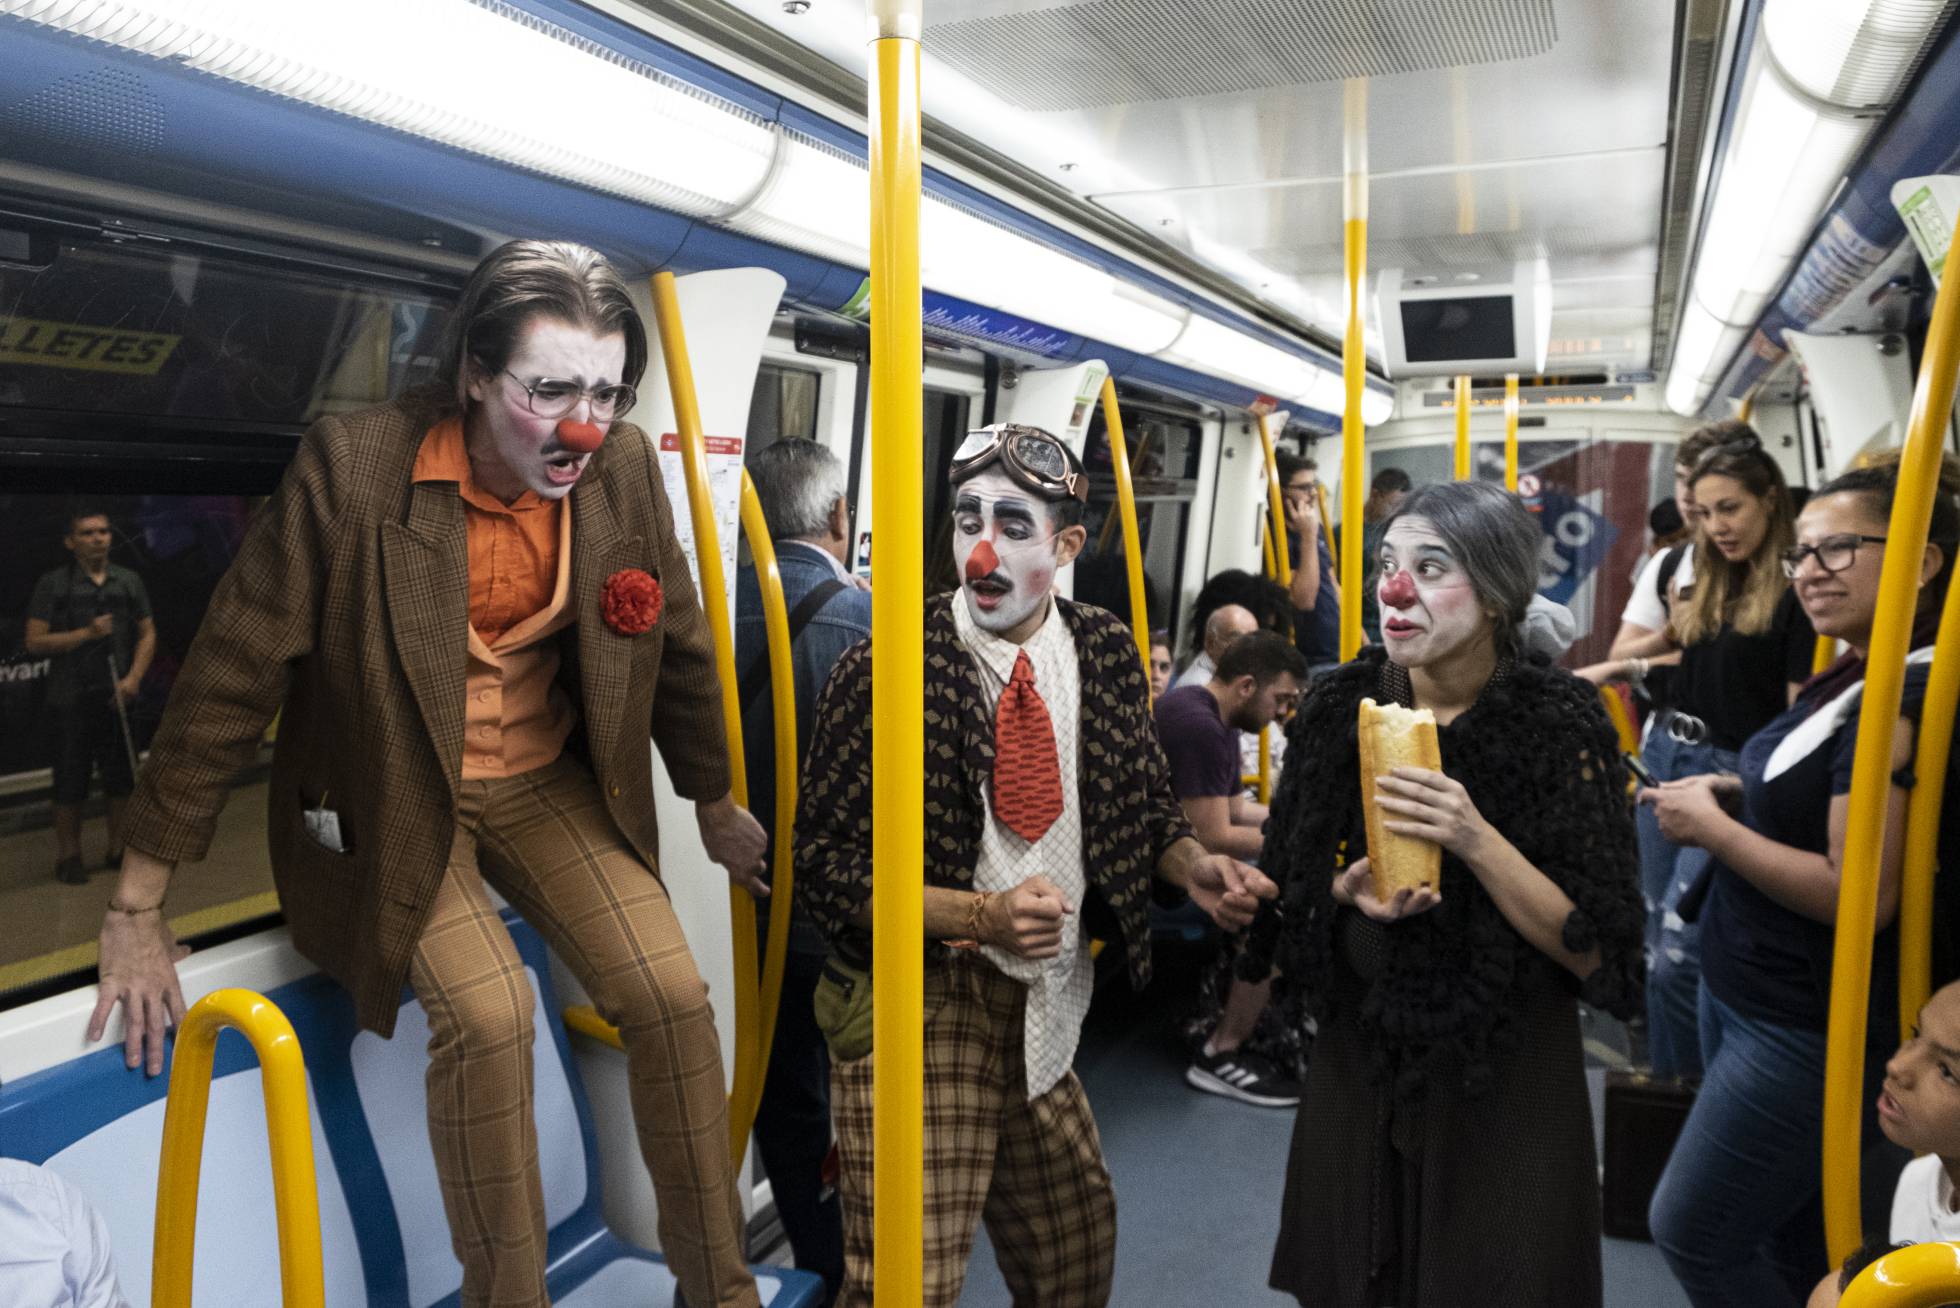 Вагоны метро Мадрида превращаются в импровизированную сцену для молодых актеров